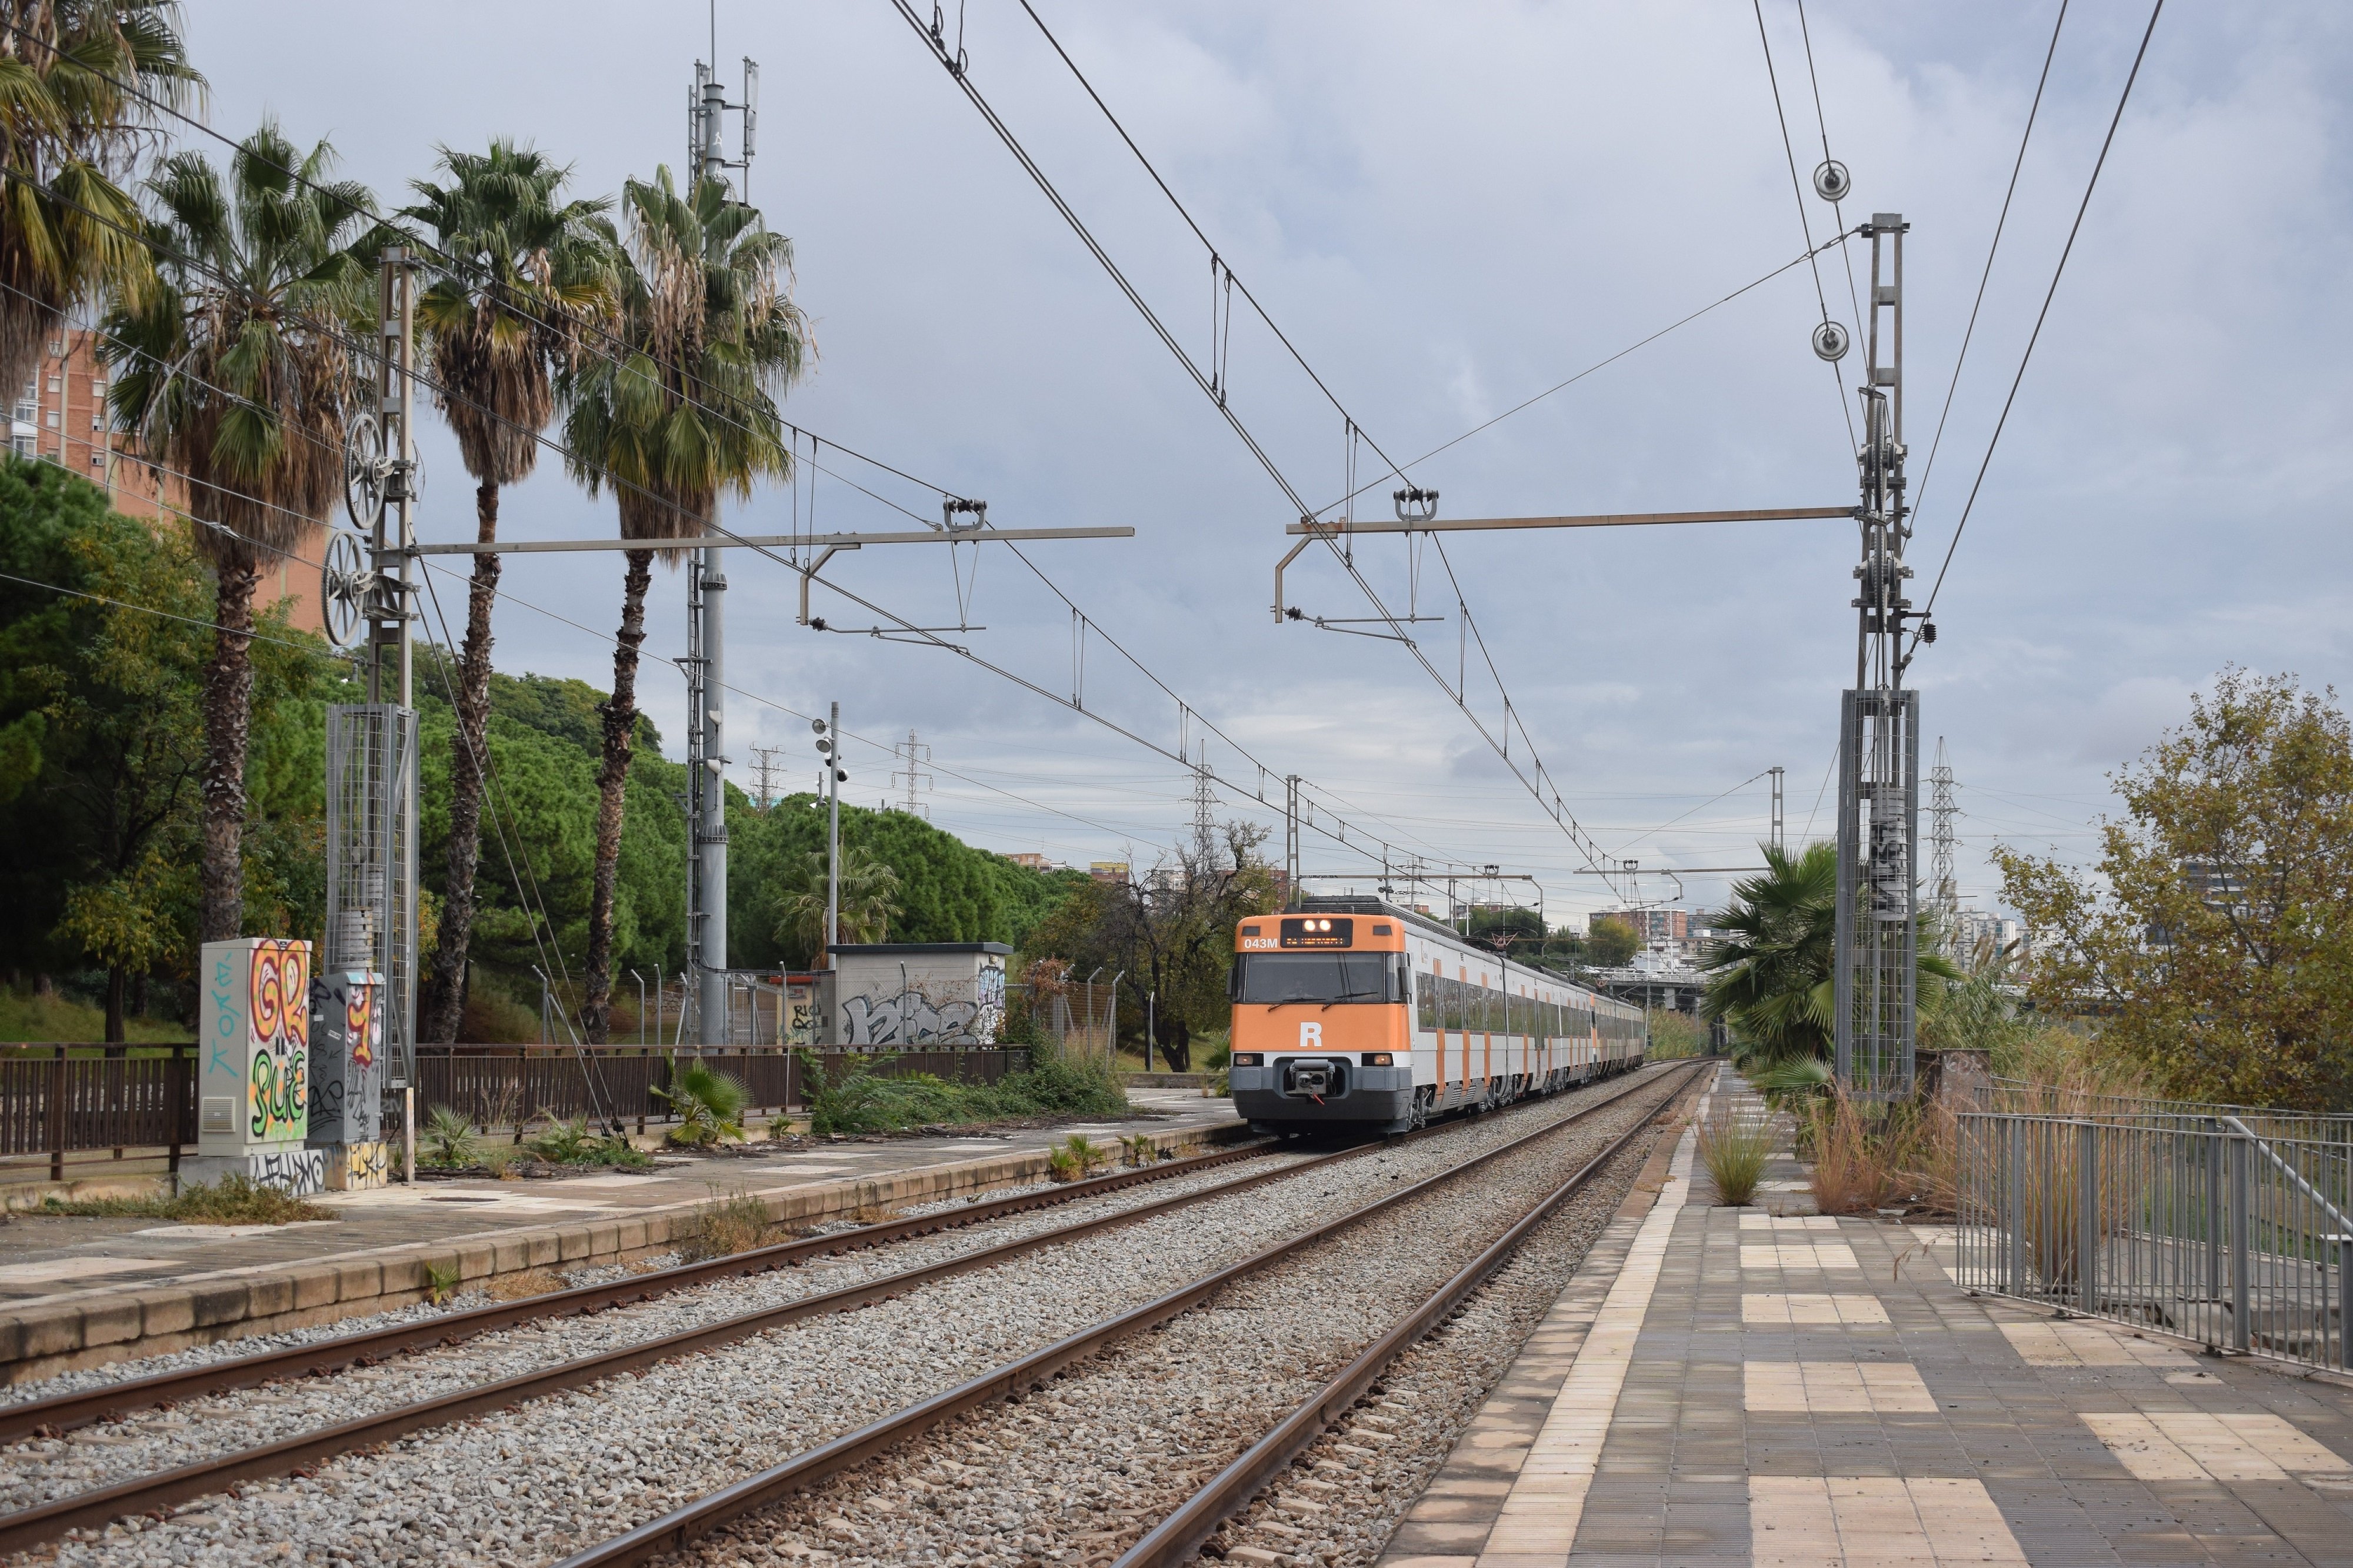 Les estacions ‘fantasma’ de la xarxa ferroviària de Catalunya